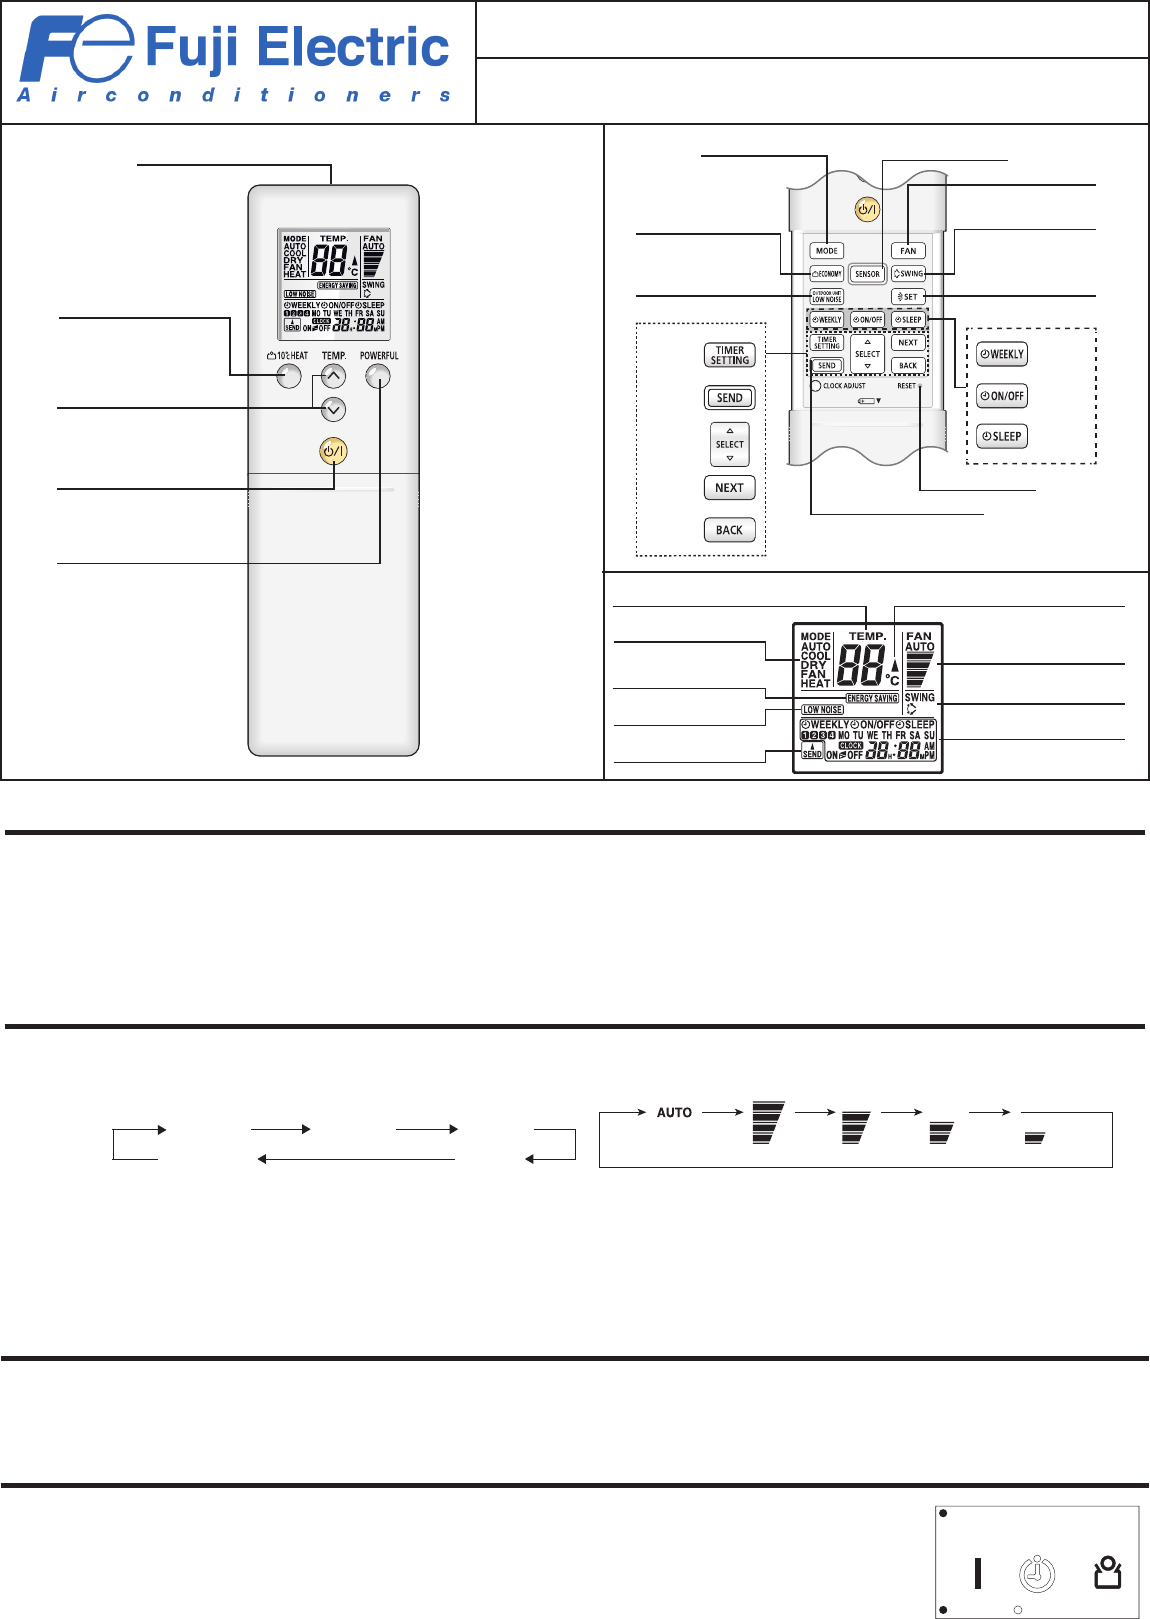 Обзор и описание кондиционеров Fuji electric (фуджи электрик), инструкции